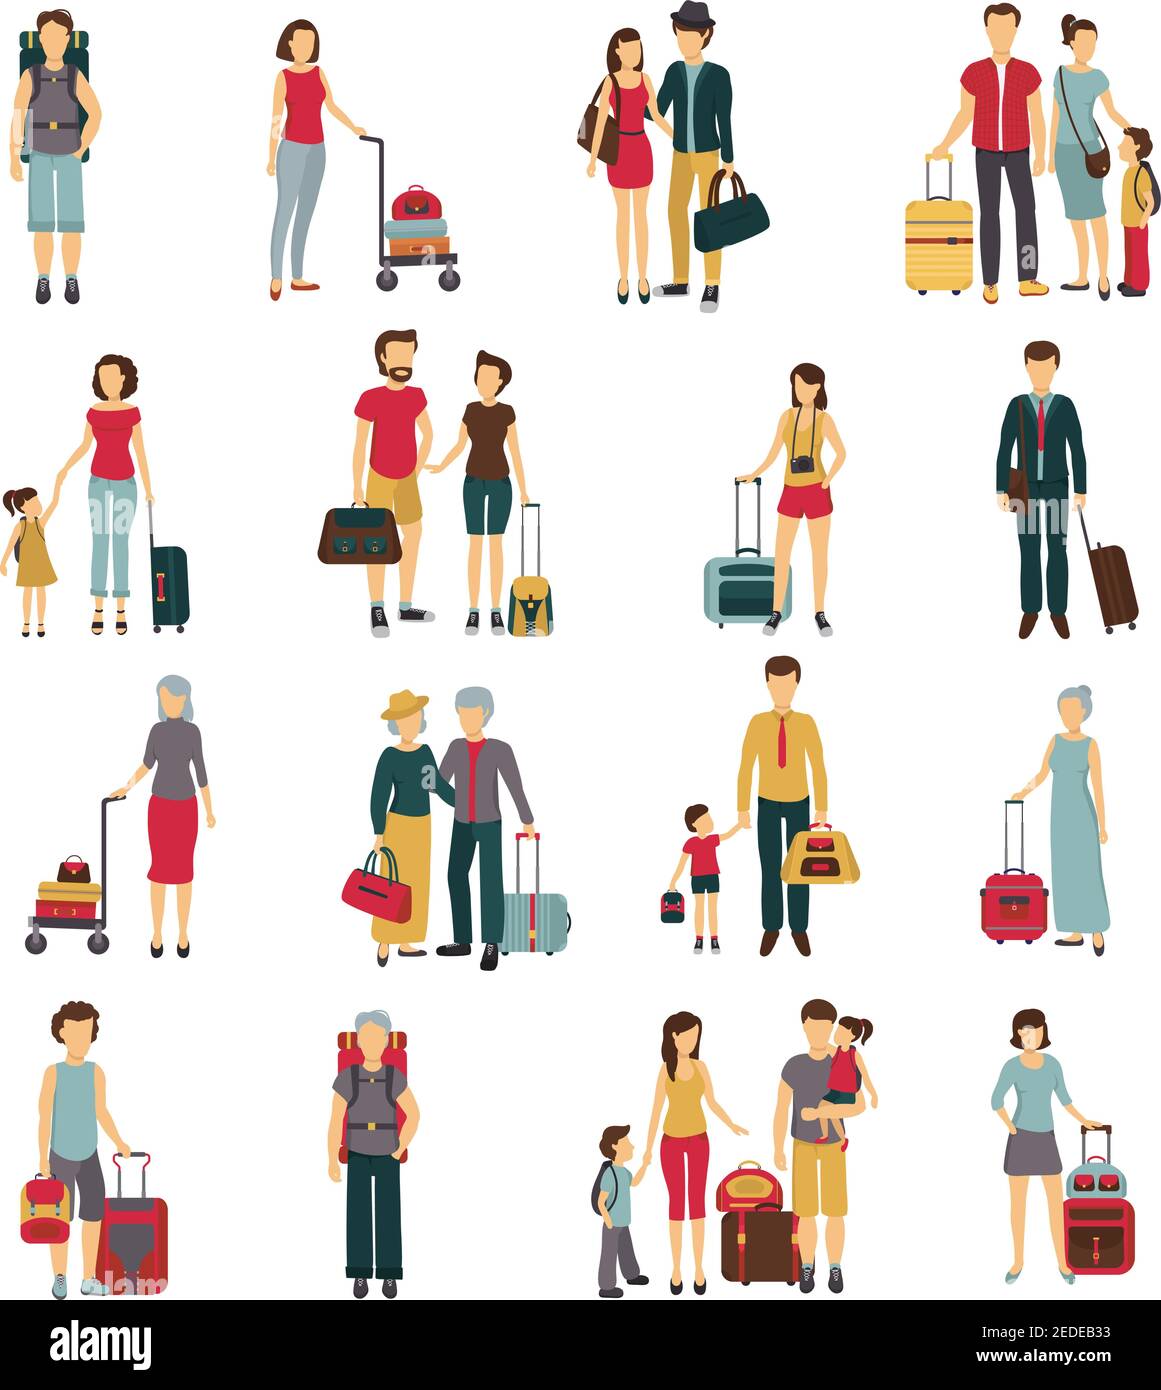 Turisti con bagaglio che viaggiano con amici di famiglia e da soli illustrazione astratta del vettore isolato della collezione di icone piatte Illustrazione Vettoriale